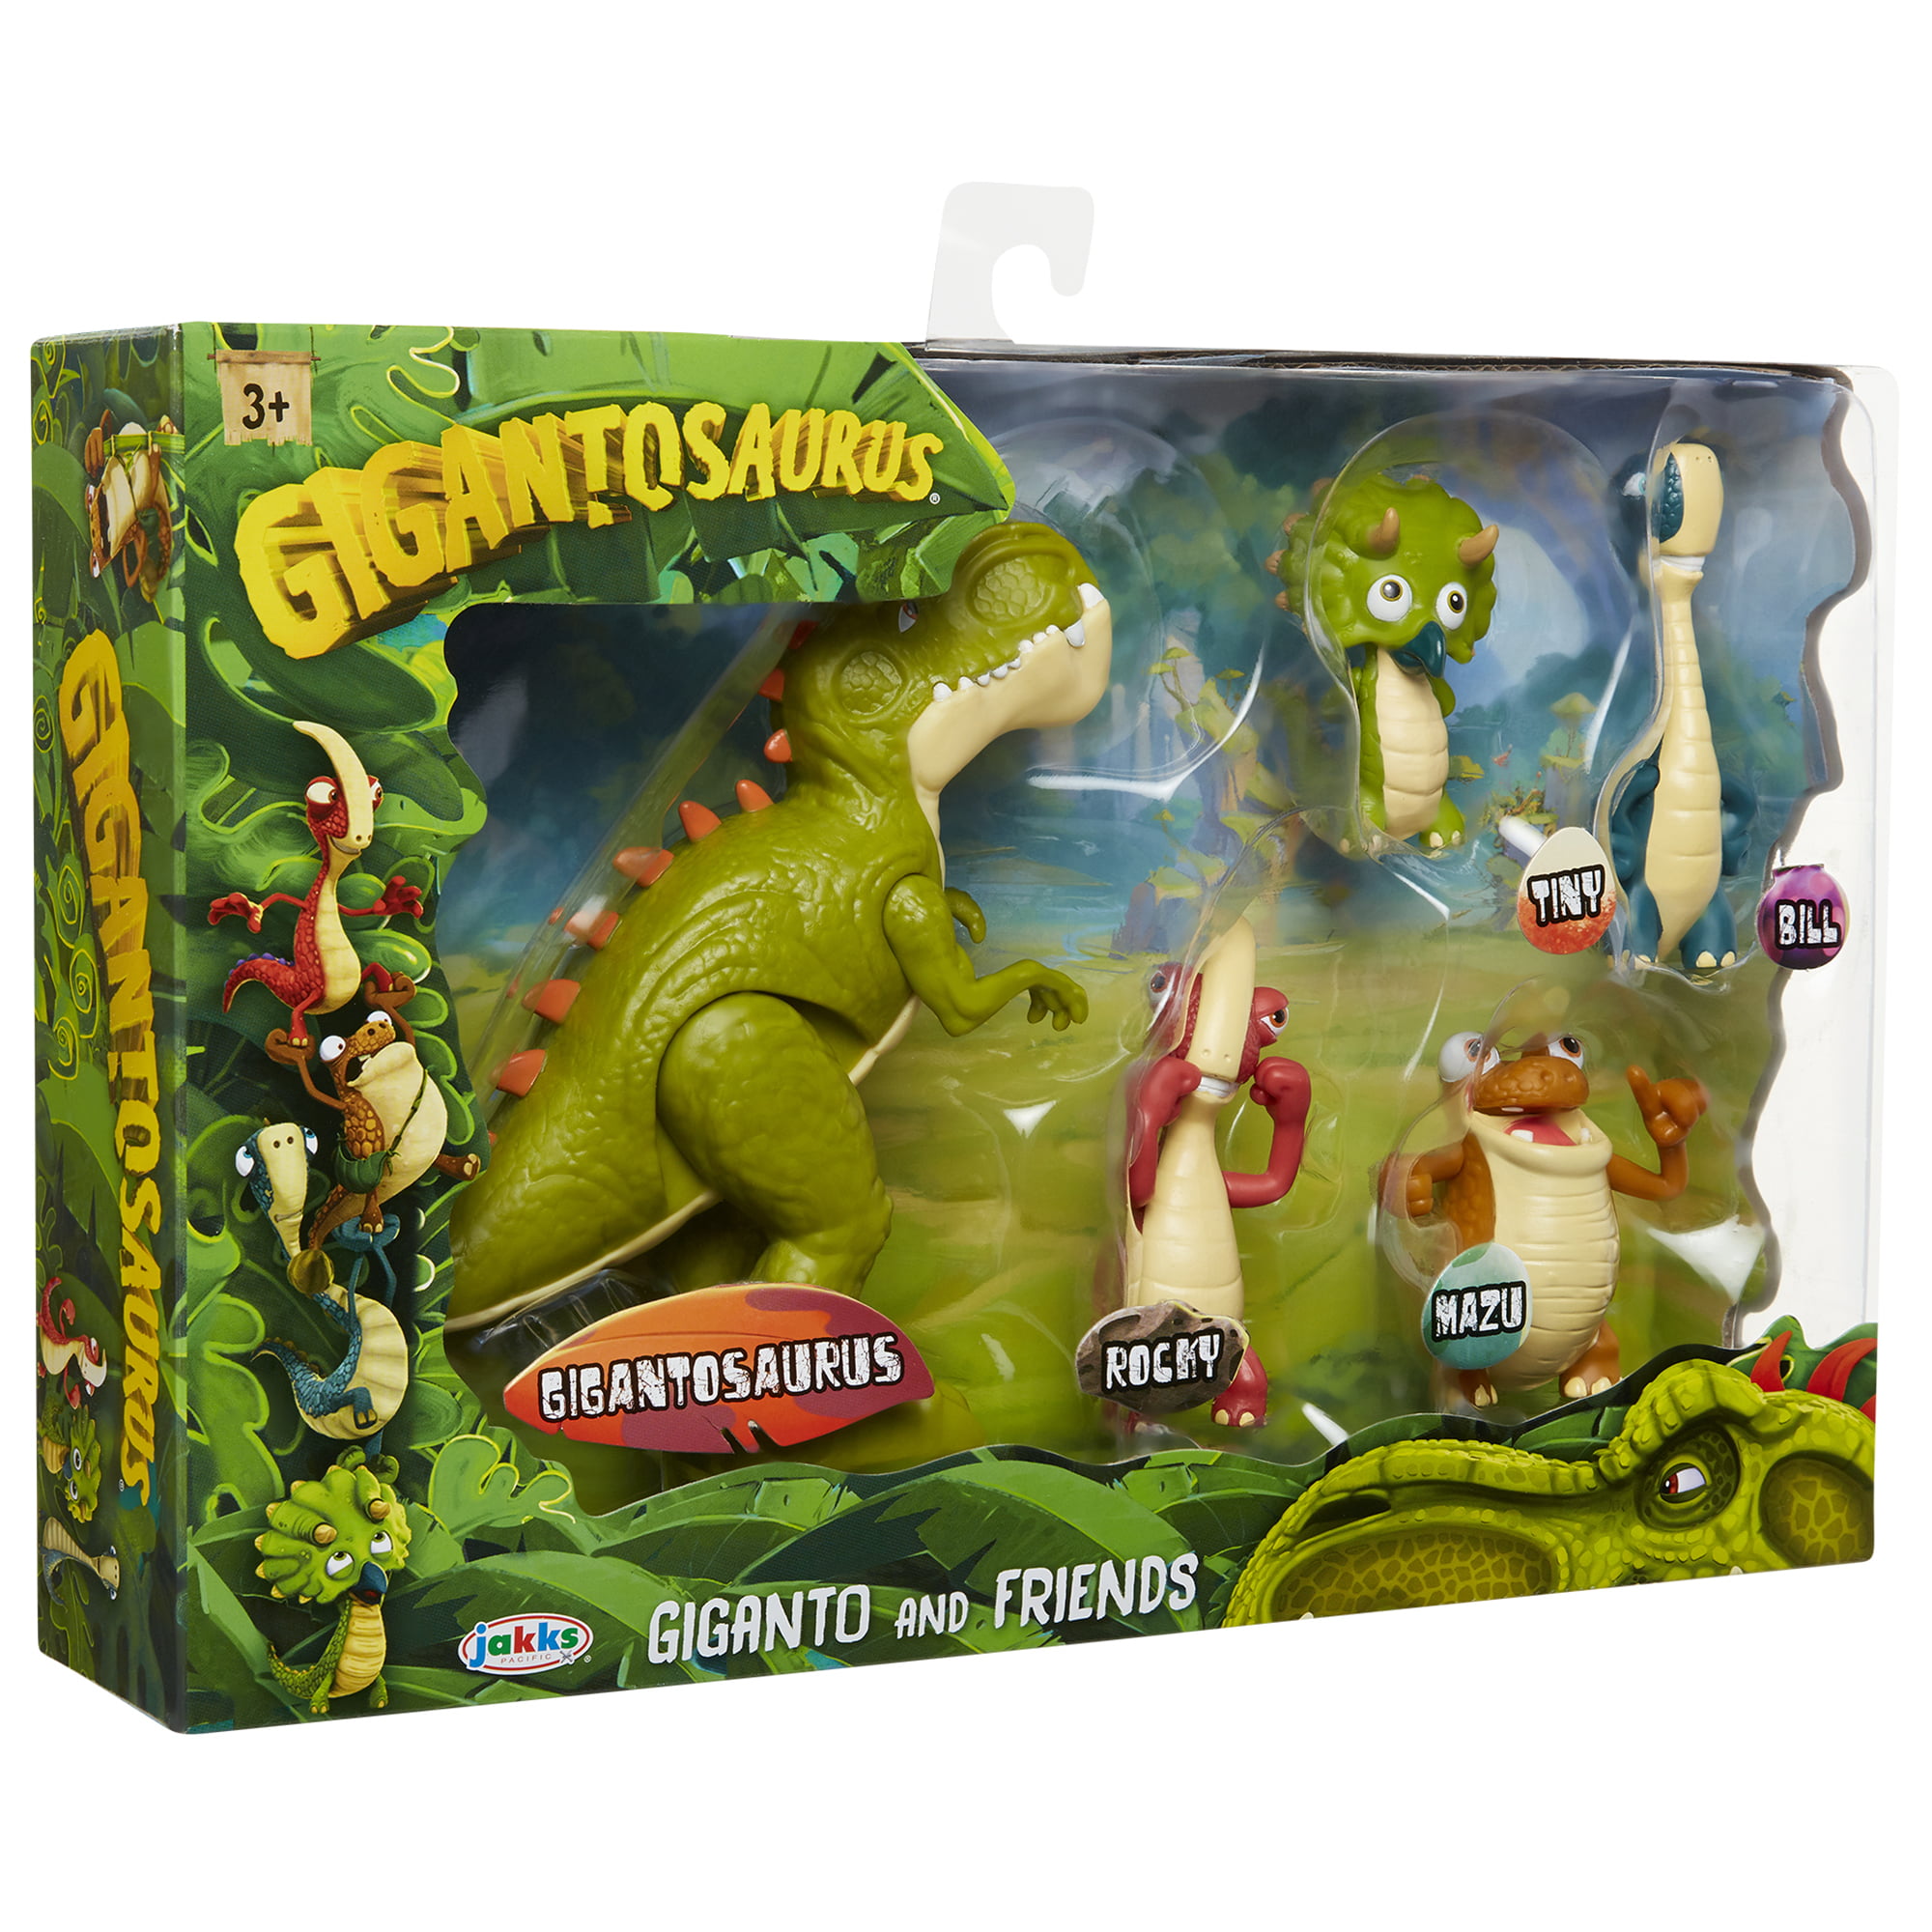 Gigantosaurus Figures Giganto & Friends Toy Action Figures Includes Giganto & 